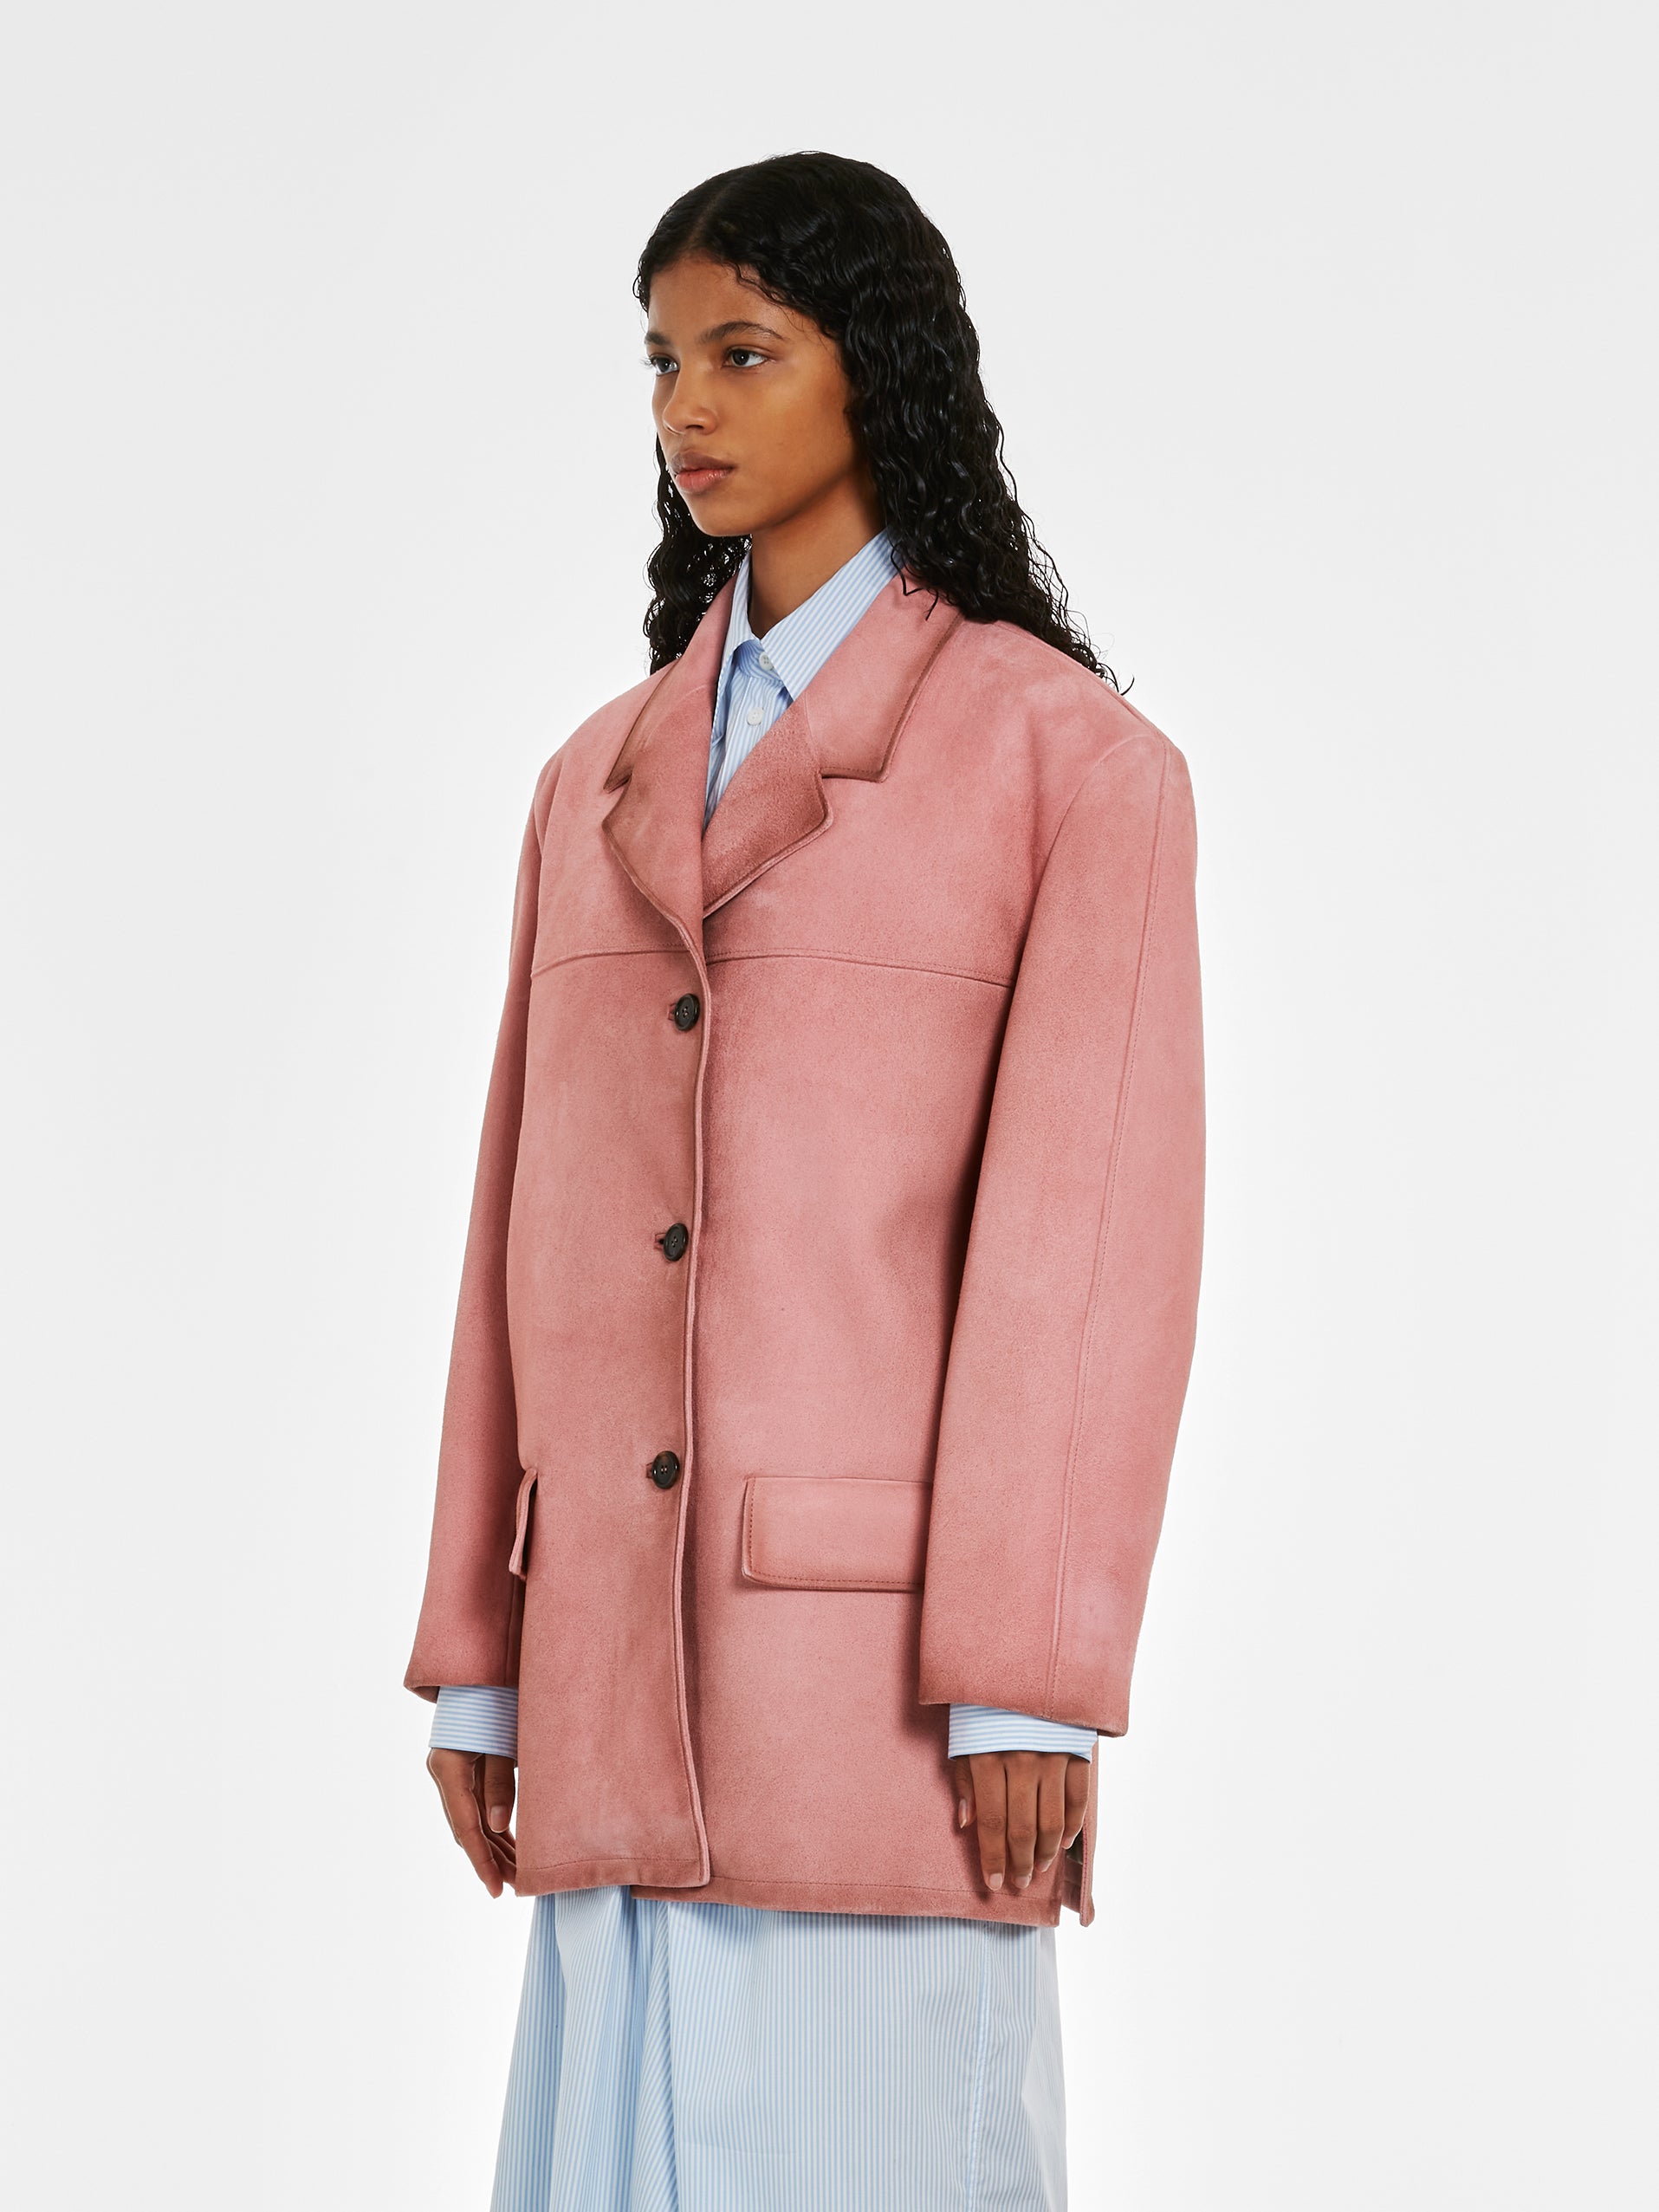 Prada - Women’s Suede Coat - (Petal Pink) view 2